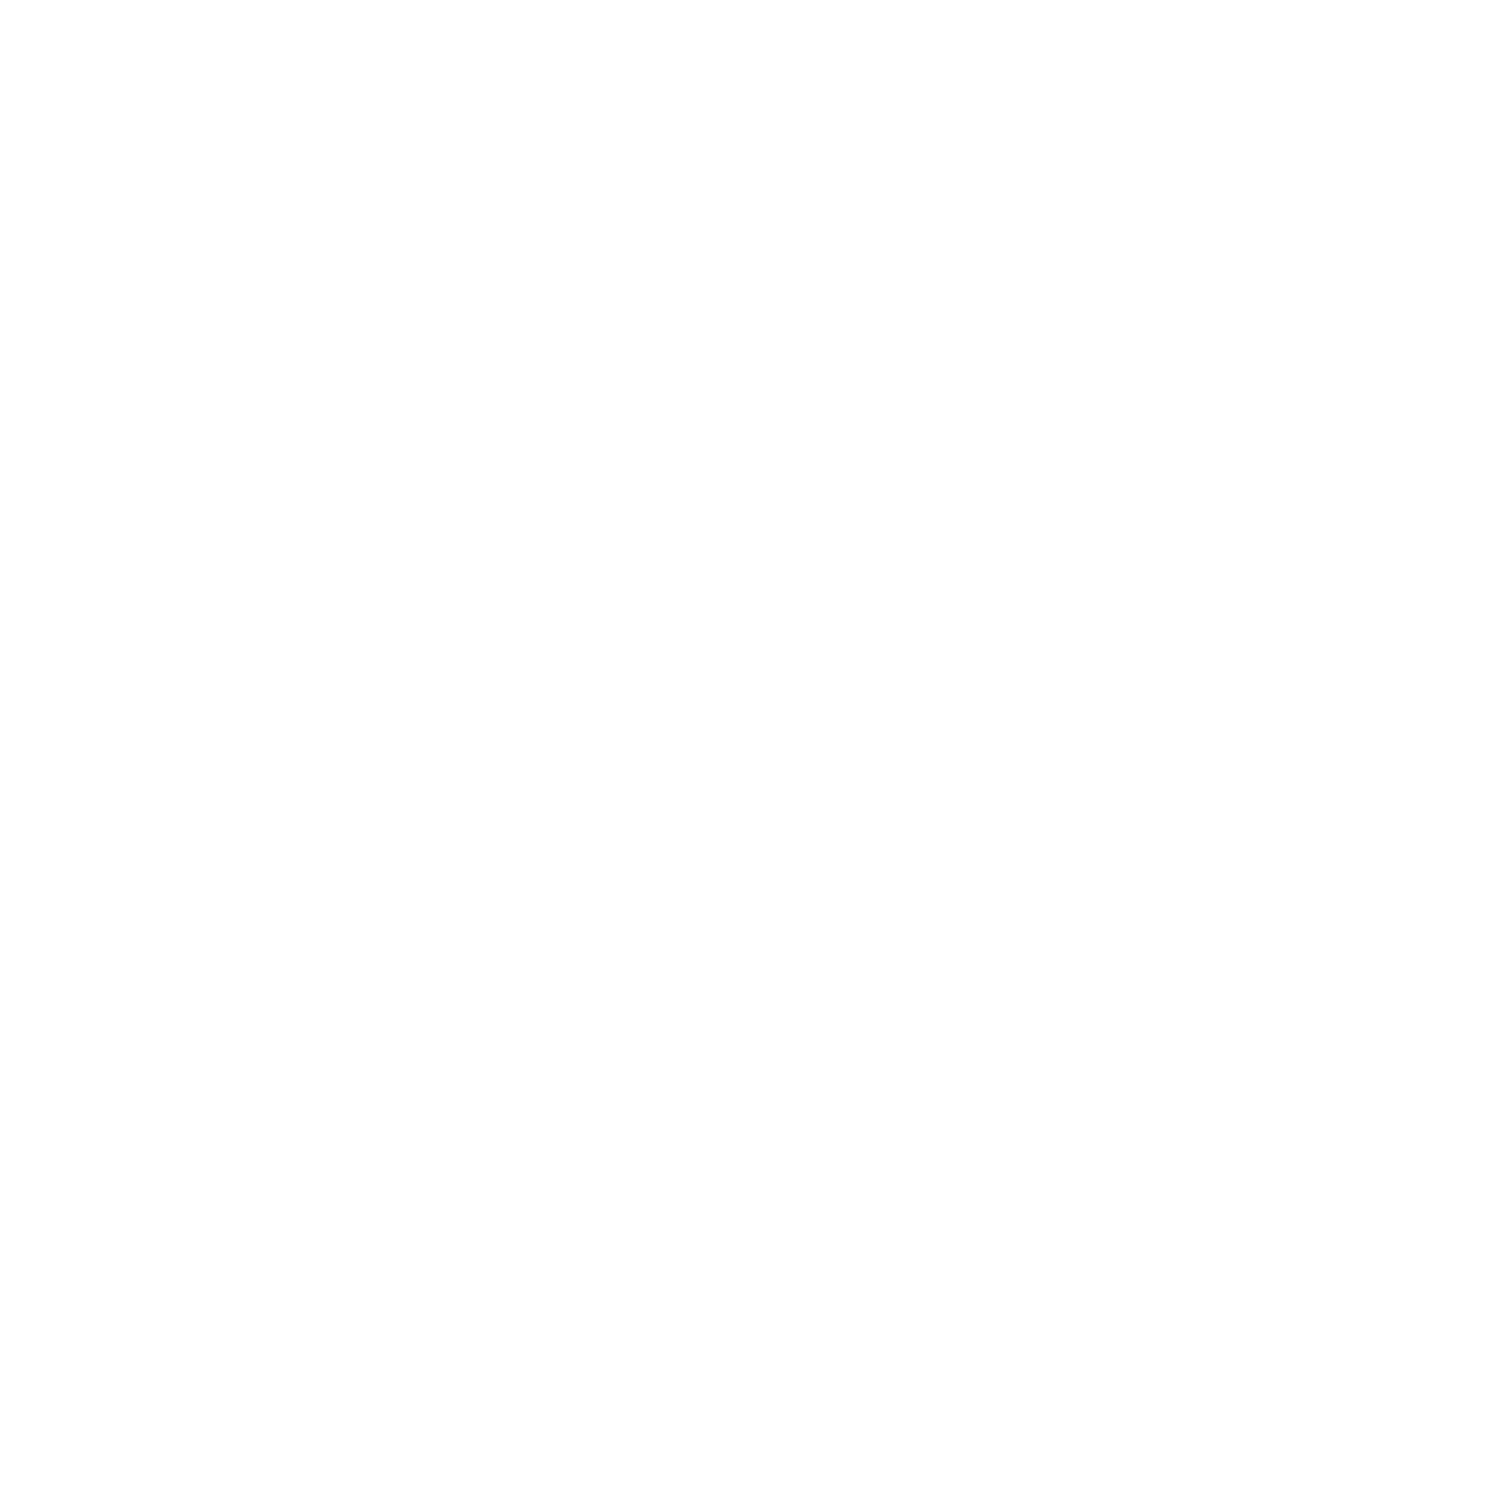 EQUINOX SPORT HORSES